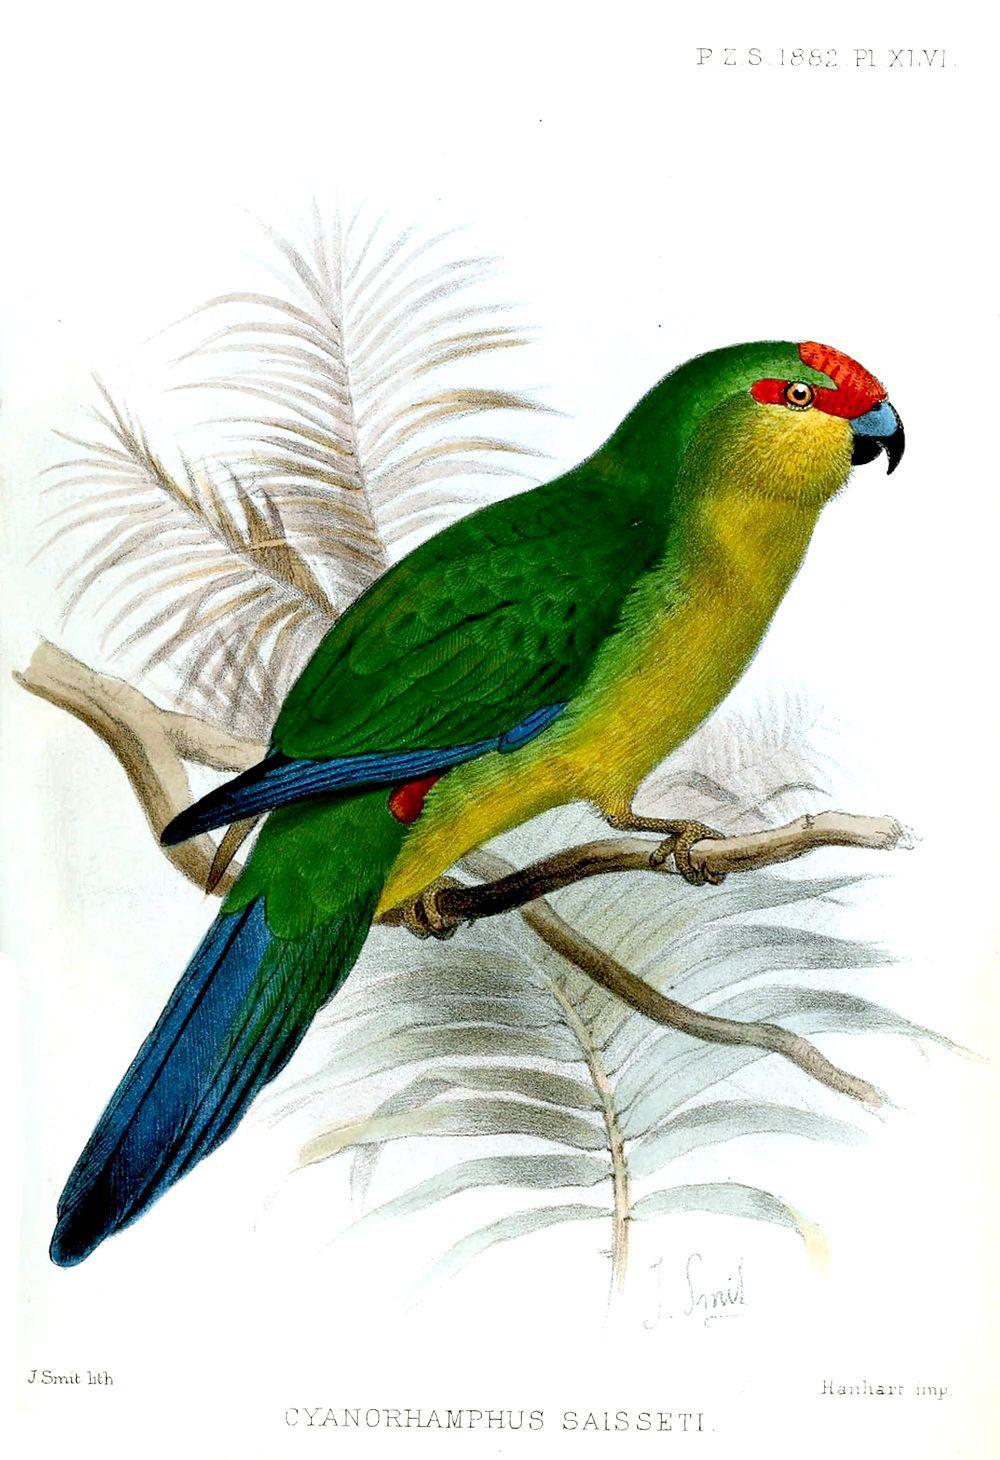 新加里东红额鹦鹉 / New Caledonian Parakeet / Cyanoramphus saisseti